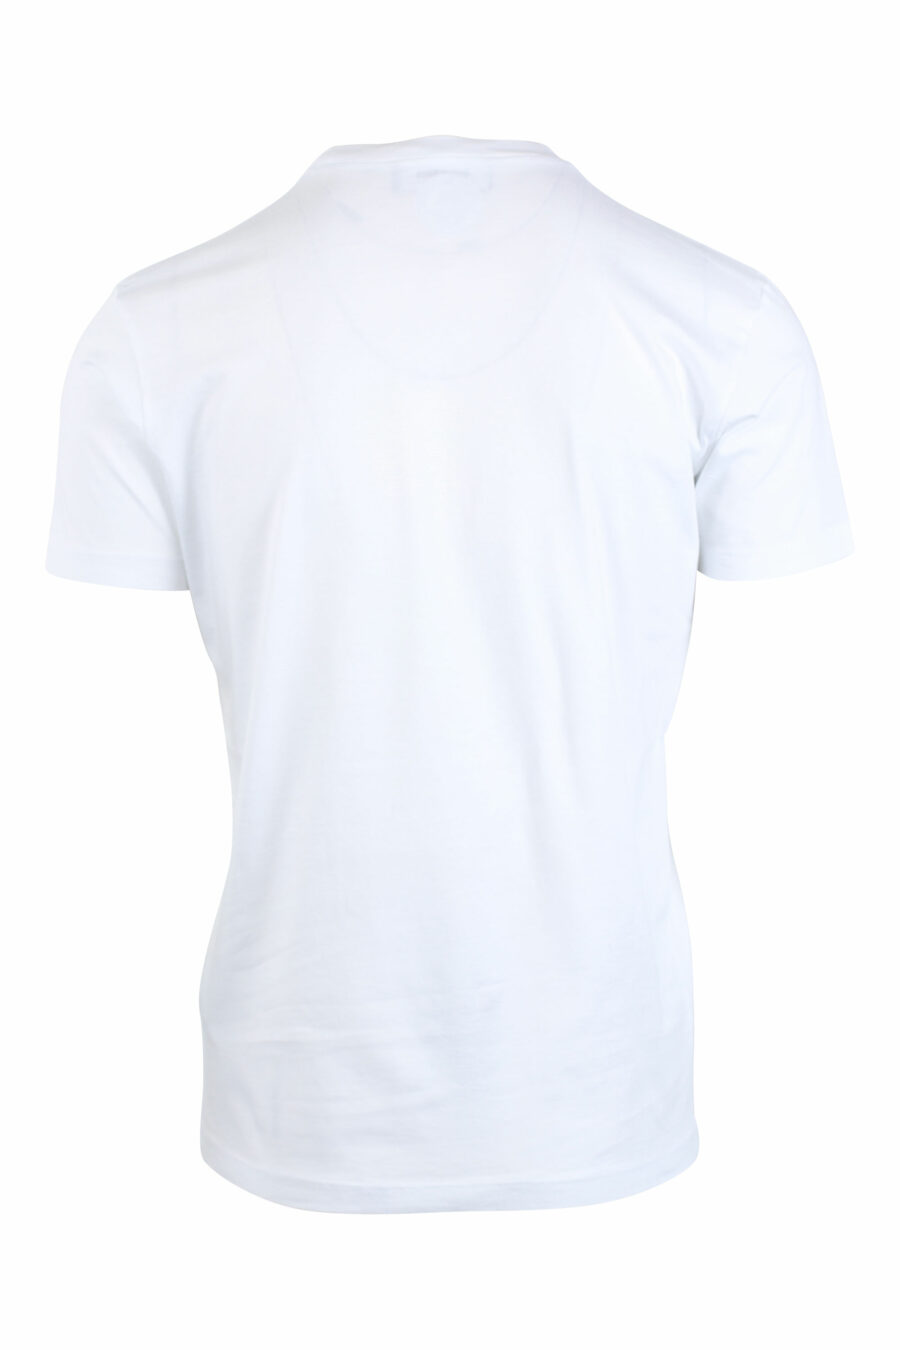 T-shirt blanc avec le logo d'une feuille verte joyeuse - IMG 2630